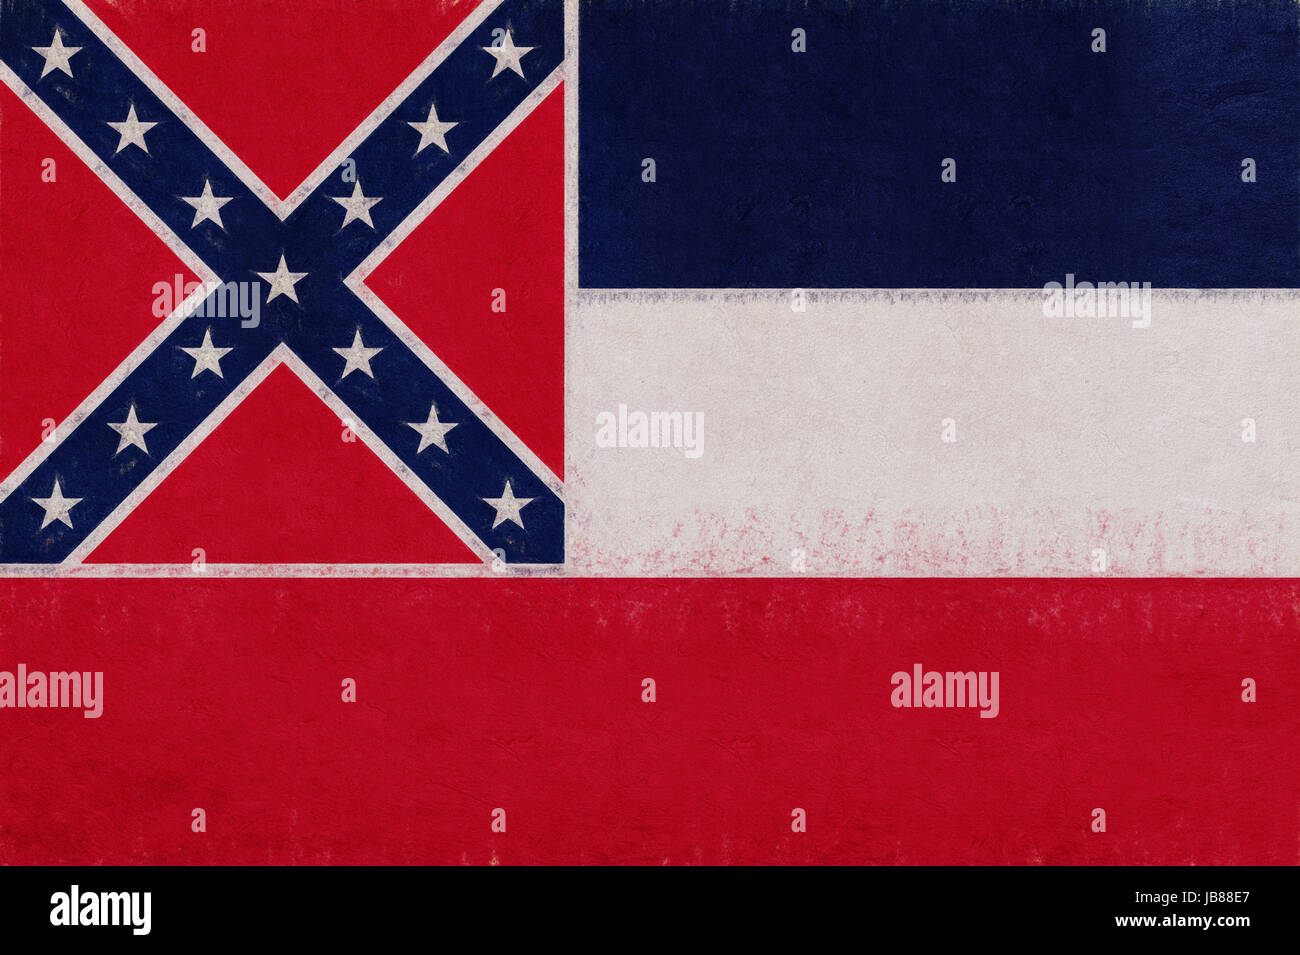 Abbildung der Flagge des Staates Mississippi in den USA mit einem Grunge-Look. Stockfoto